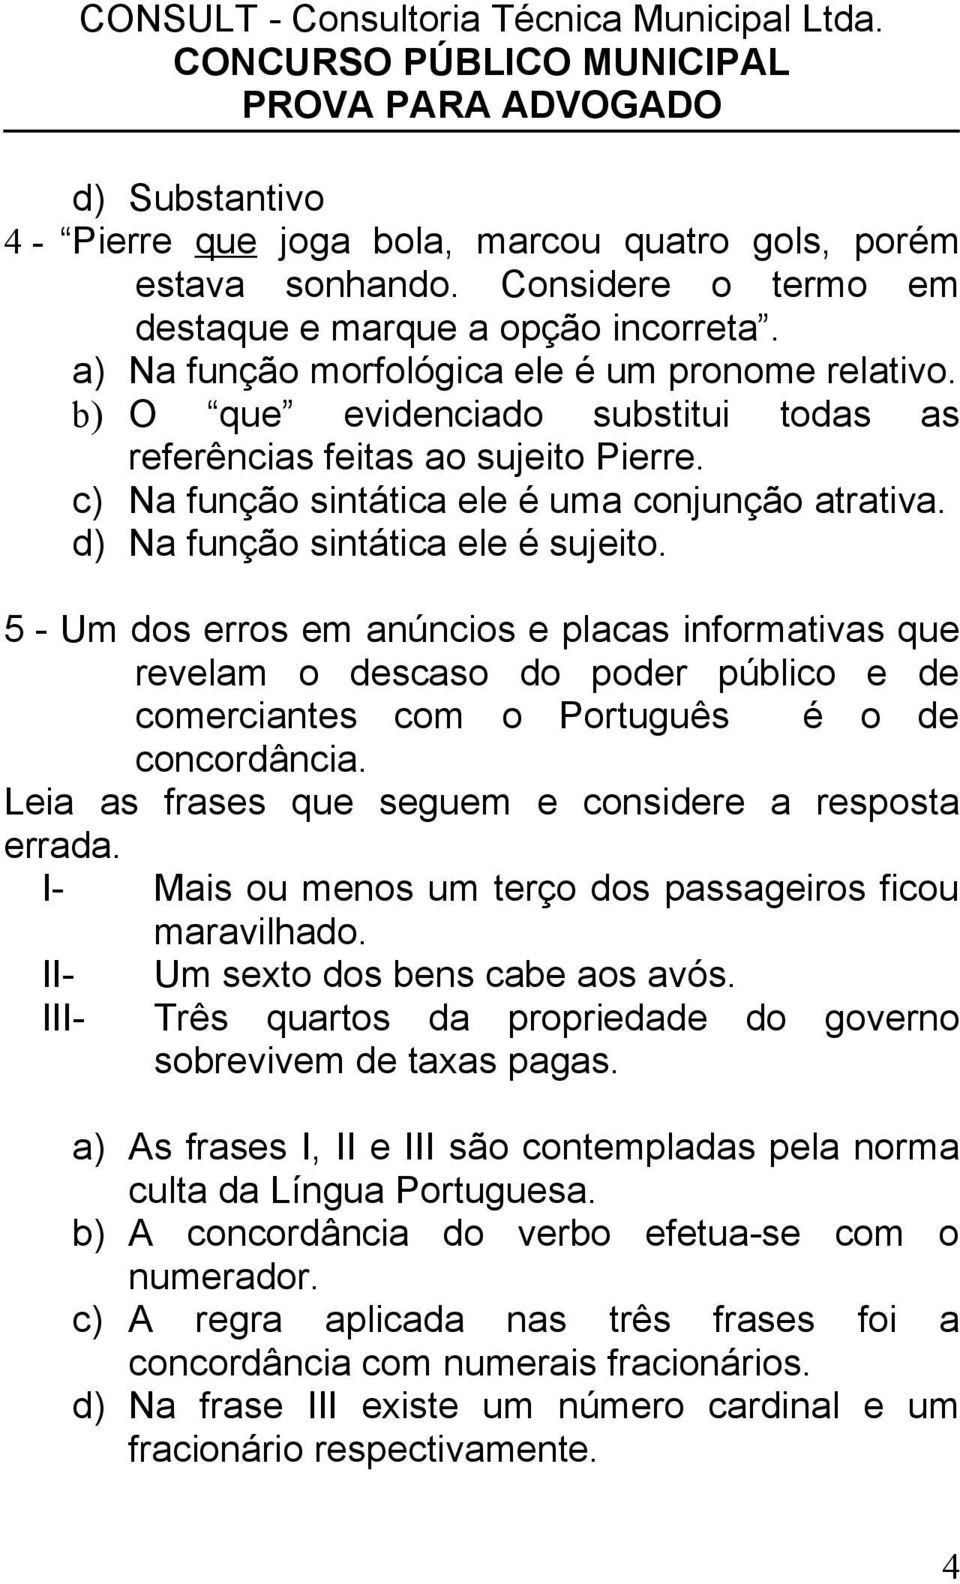 5 - Um dos erros em anúncios e placas informativas que revelam o descaso do poder público e de comerciantes com o Português é o de concordância.